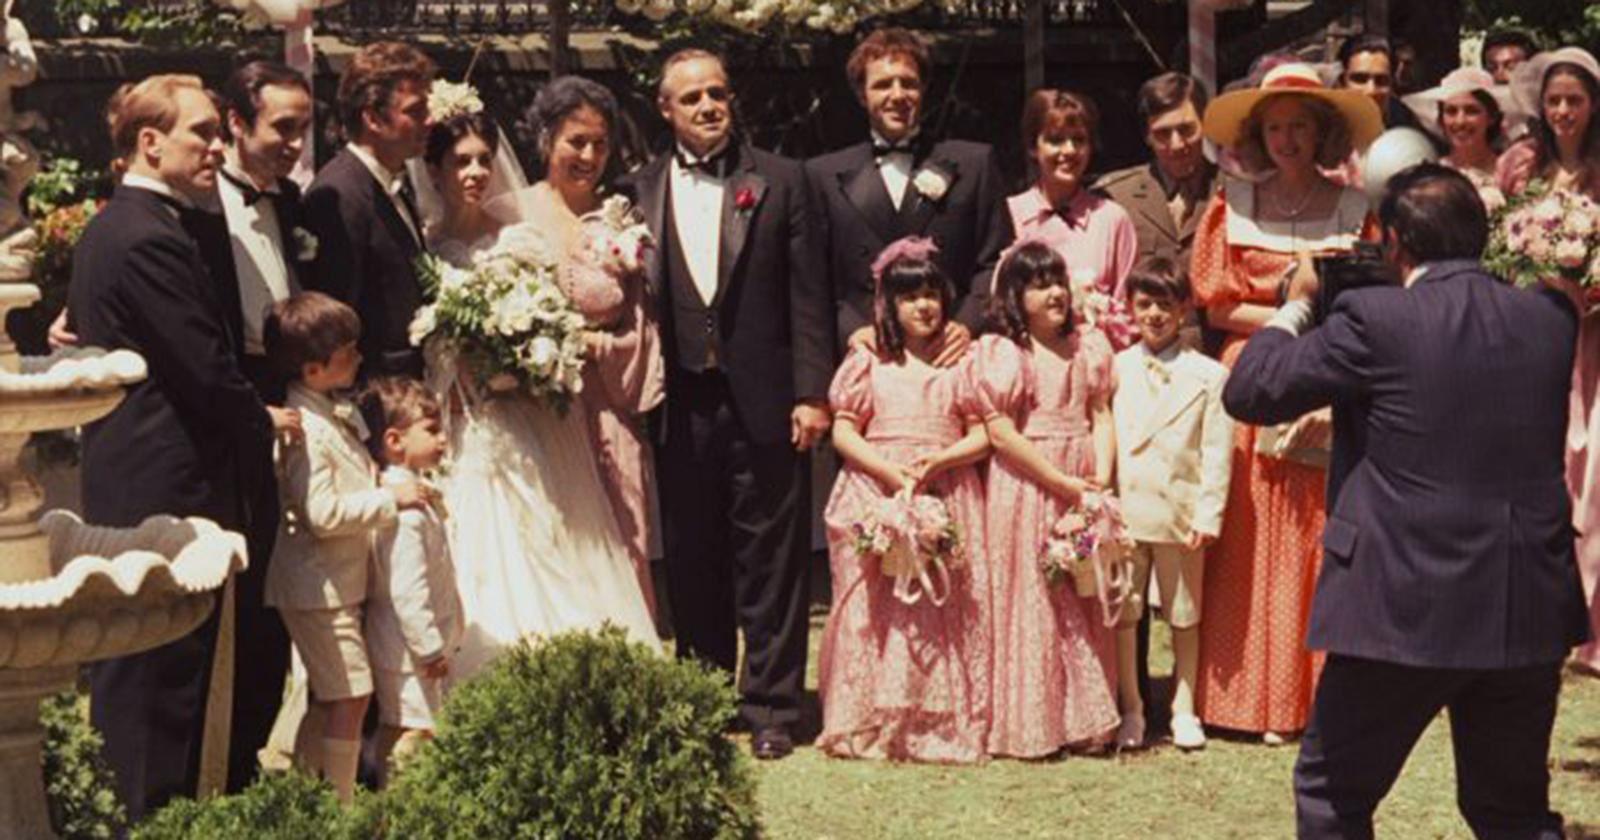 Familia Corleone tomándose un retrato familiar en la boda de Connie y Carlo